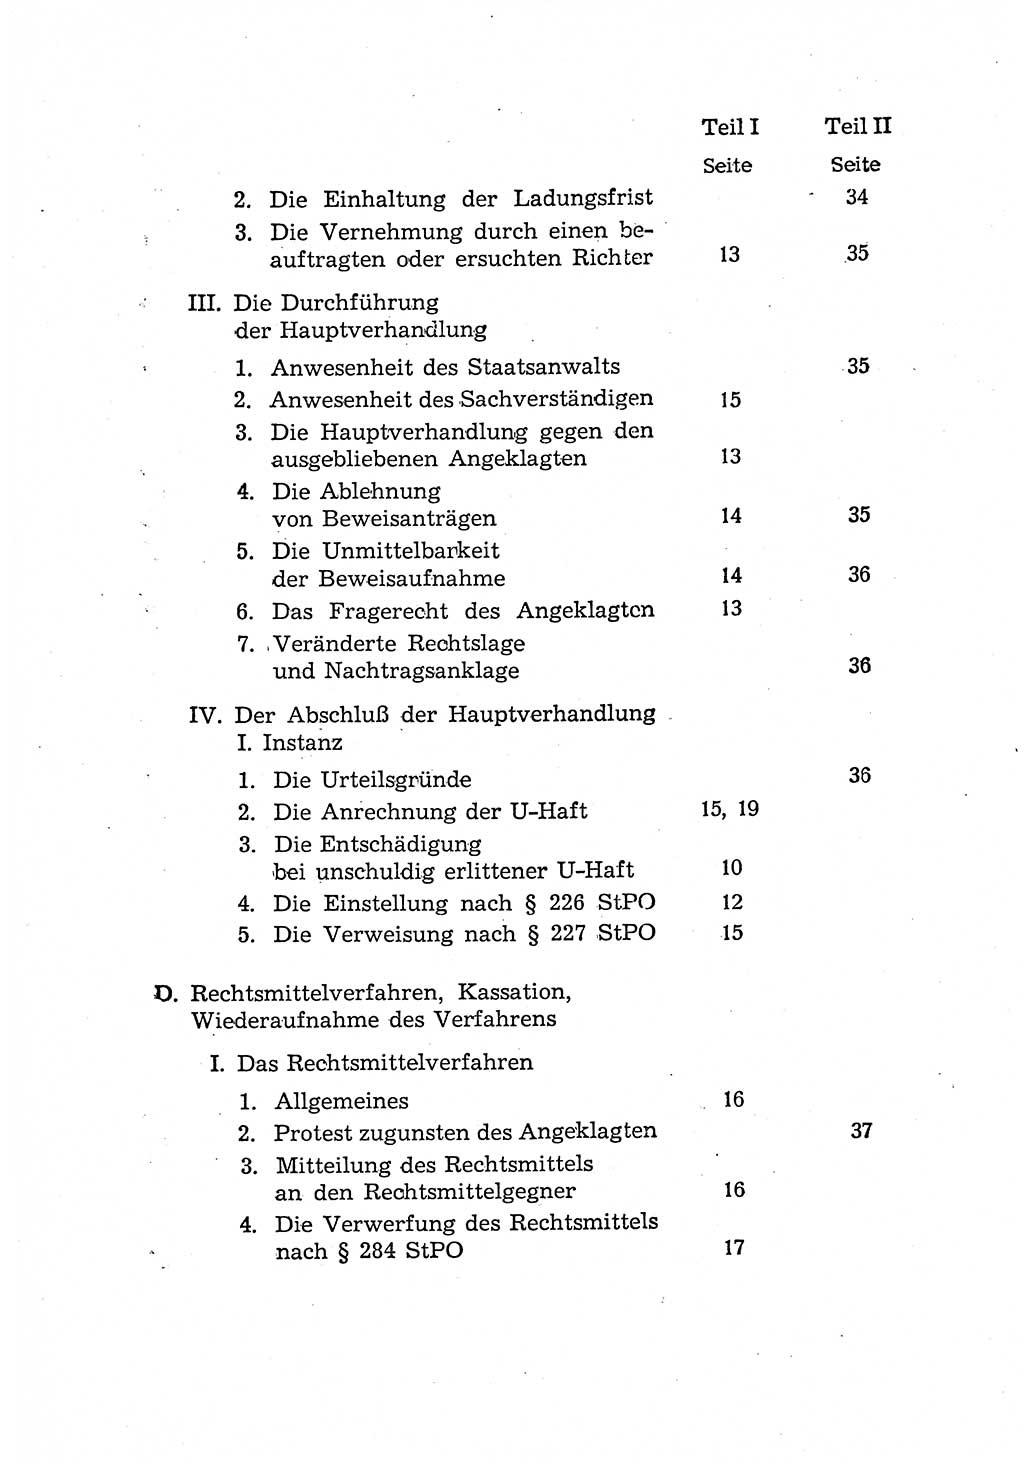 Bericht der Kommission zur Überprüfung der Anwendung der StPO (Strafprozeßordnung) [Deutsche Demokratische Republik (DDR)] 1956, Seite 6 (Ber. StPO DDR 1956, S. 6)